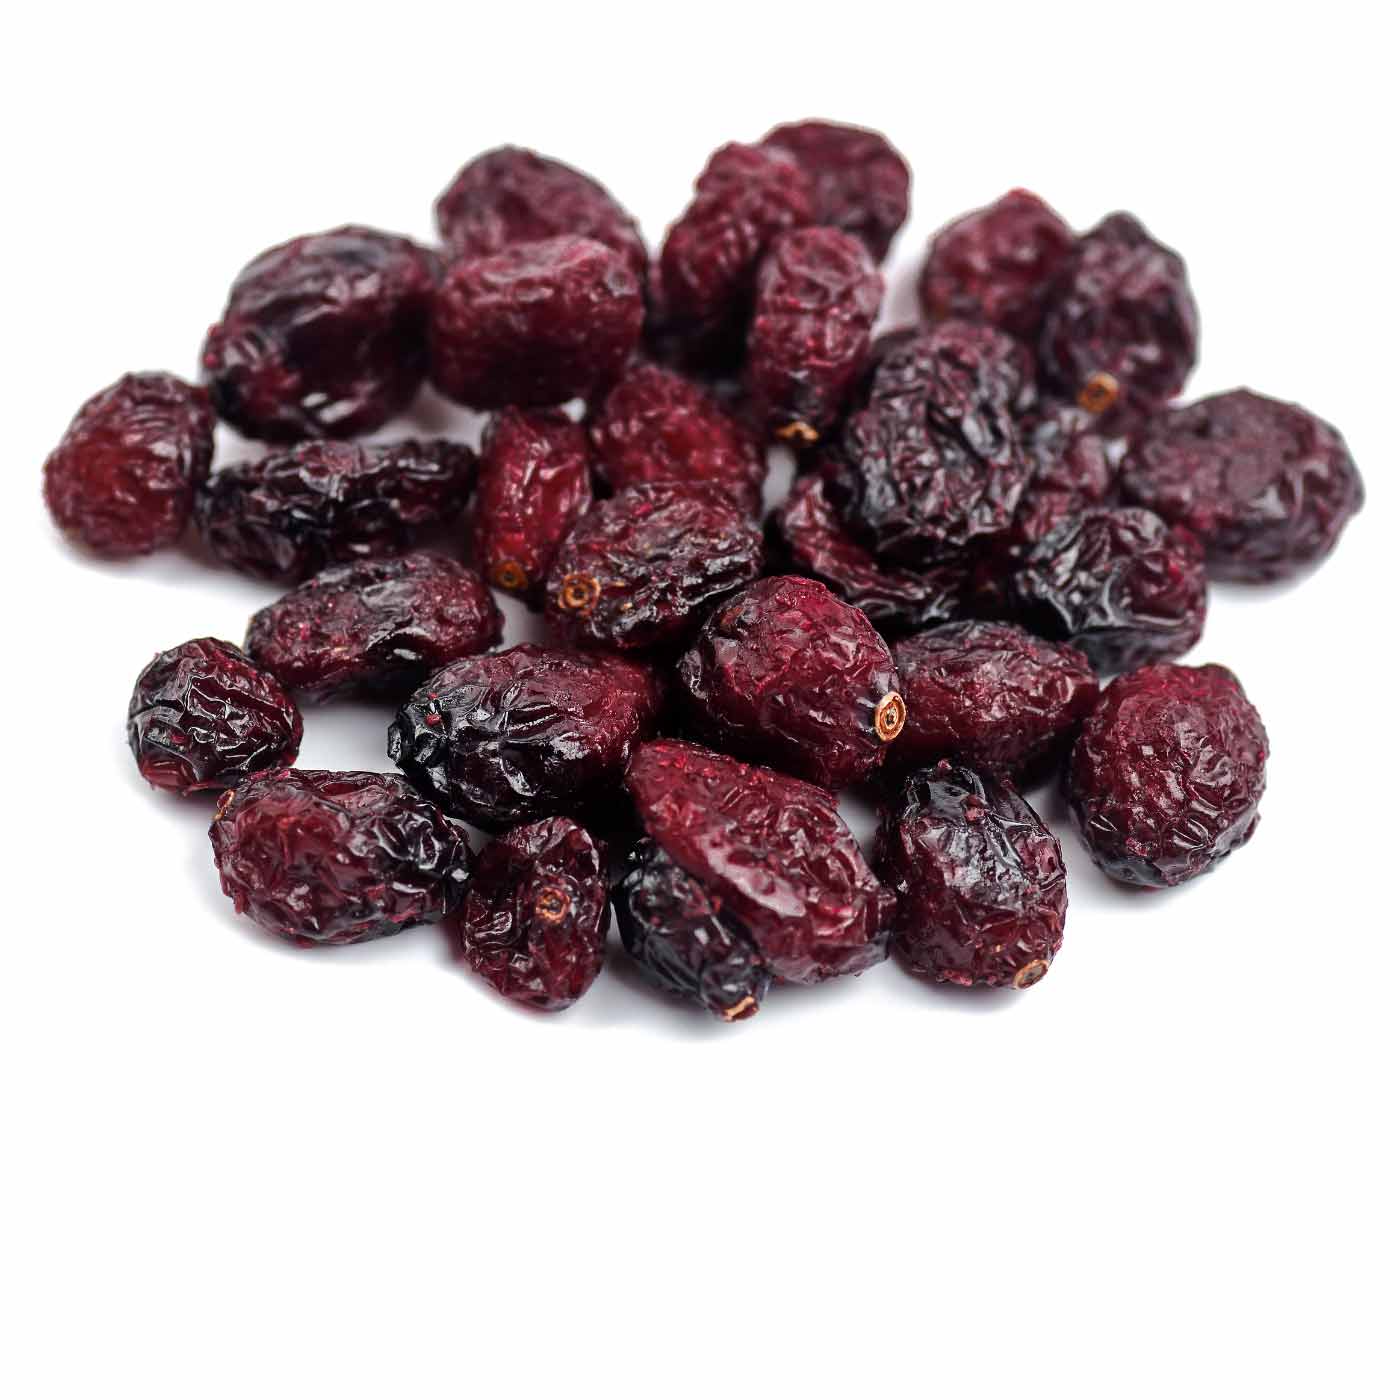 Cranberries Entières Bio 1KG amoseeds specialiste des super aliments Bio